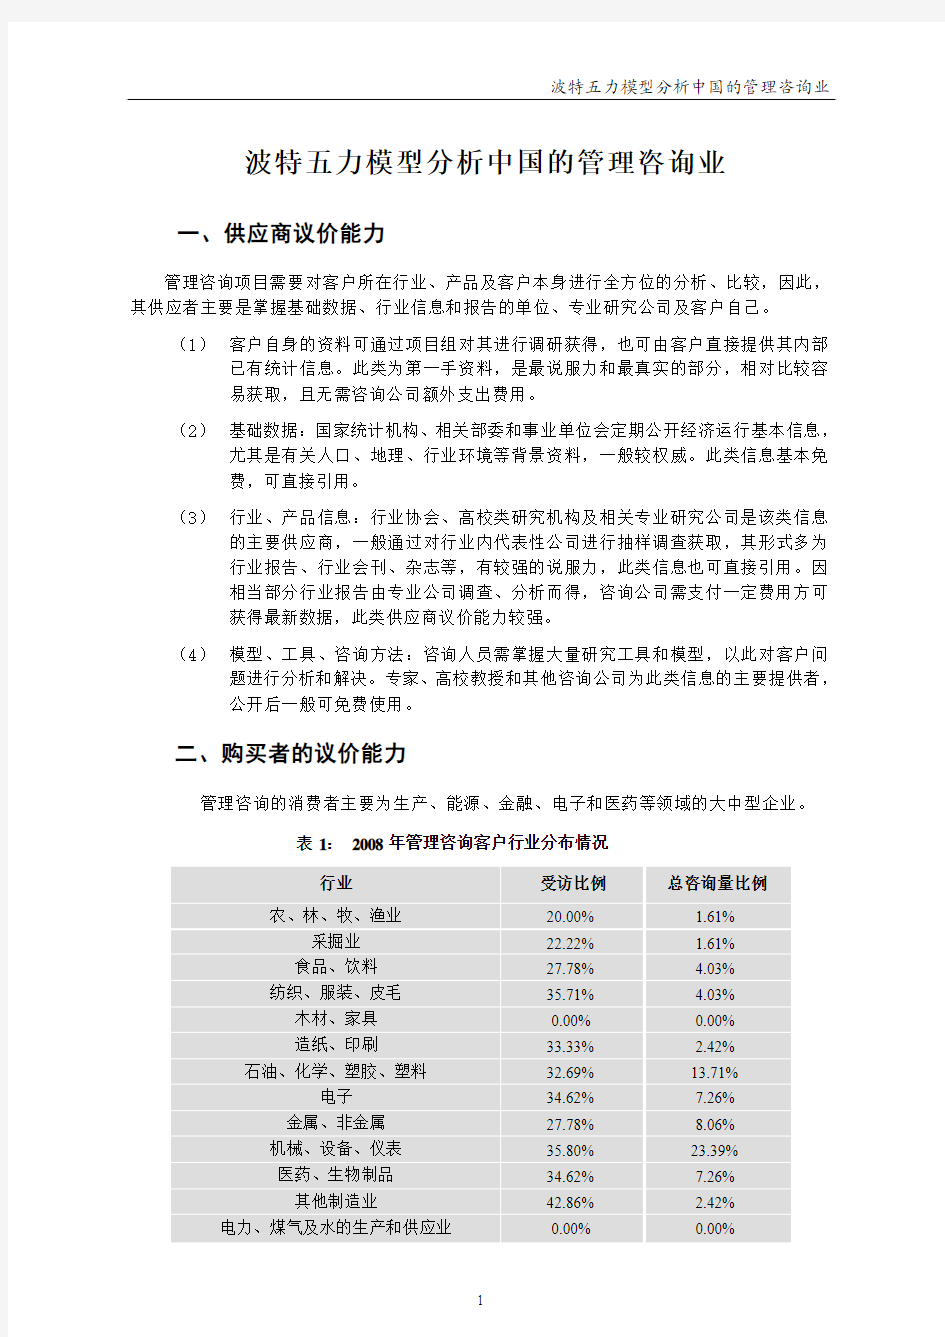 波特五力模型分析中国的管理咨询业